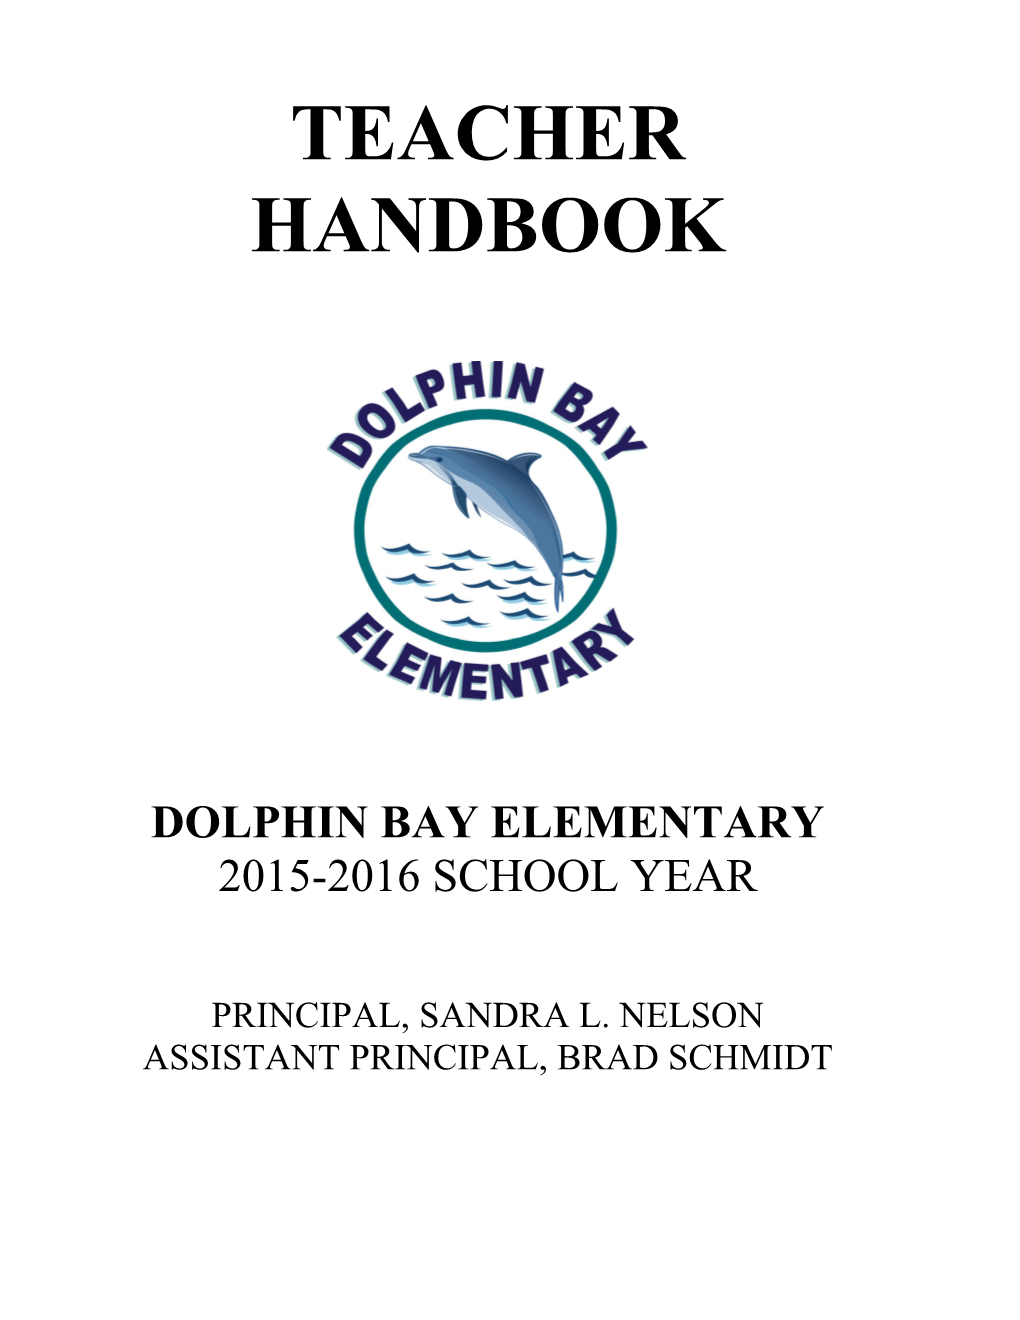 Dolphin Bay Elementary